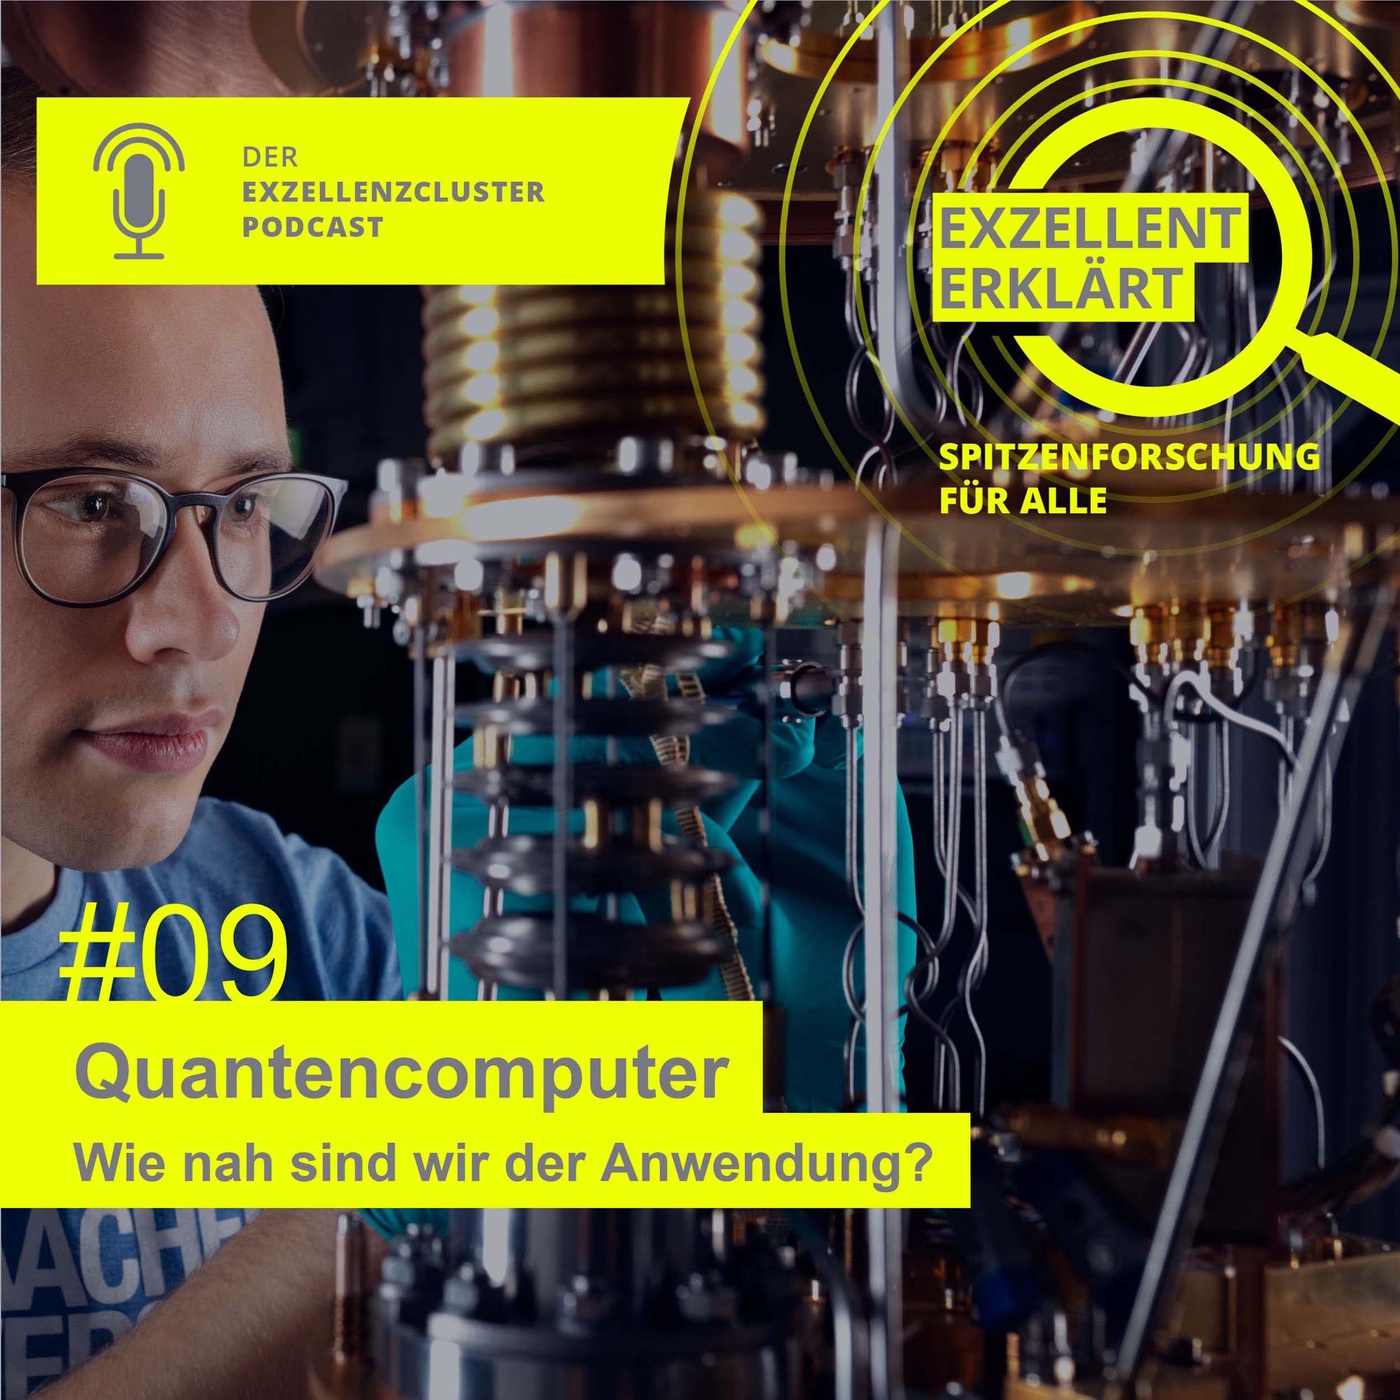 Quantencomputer – Wie nah sind wir der Anwendung?